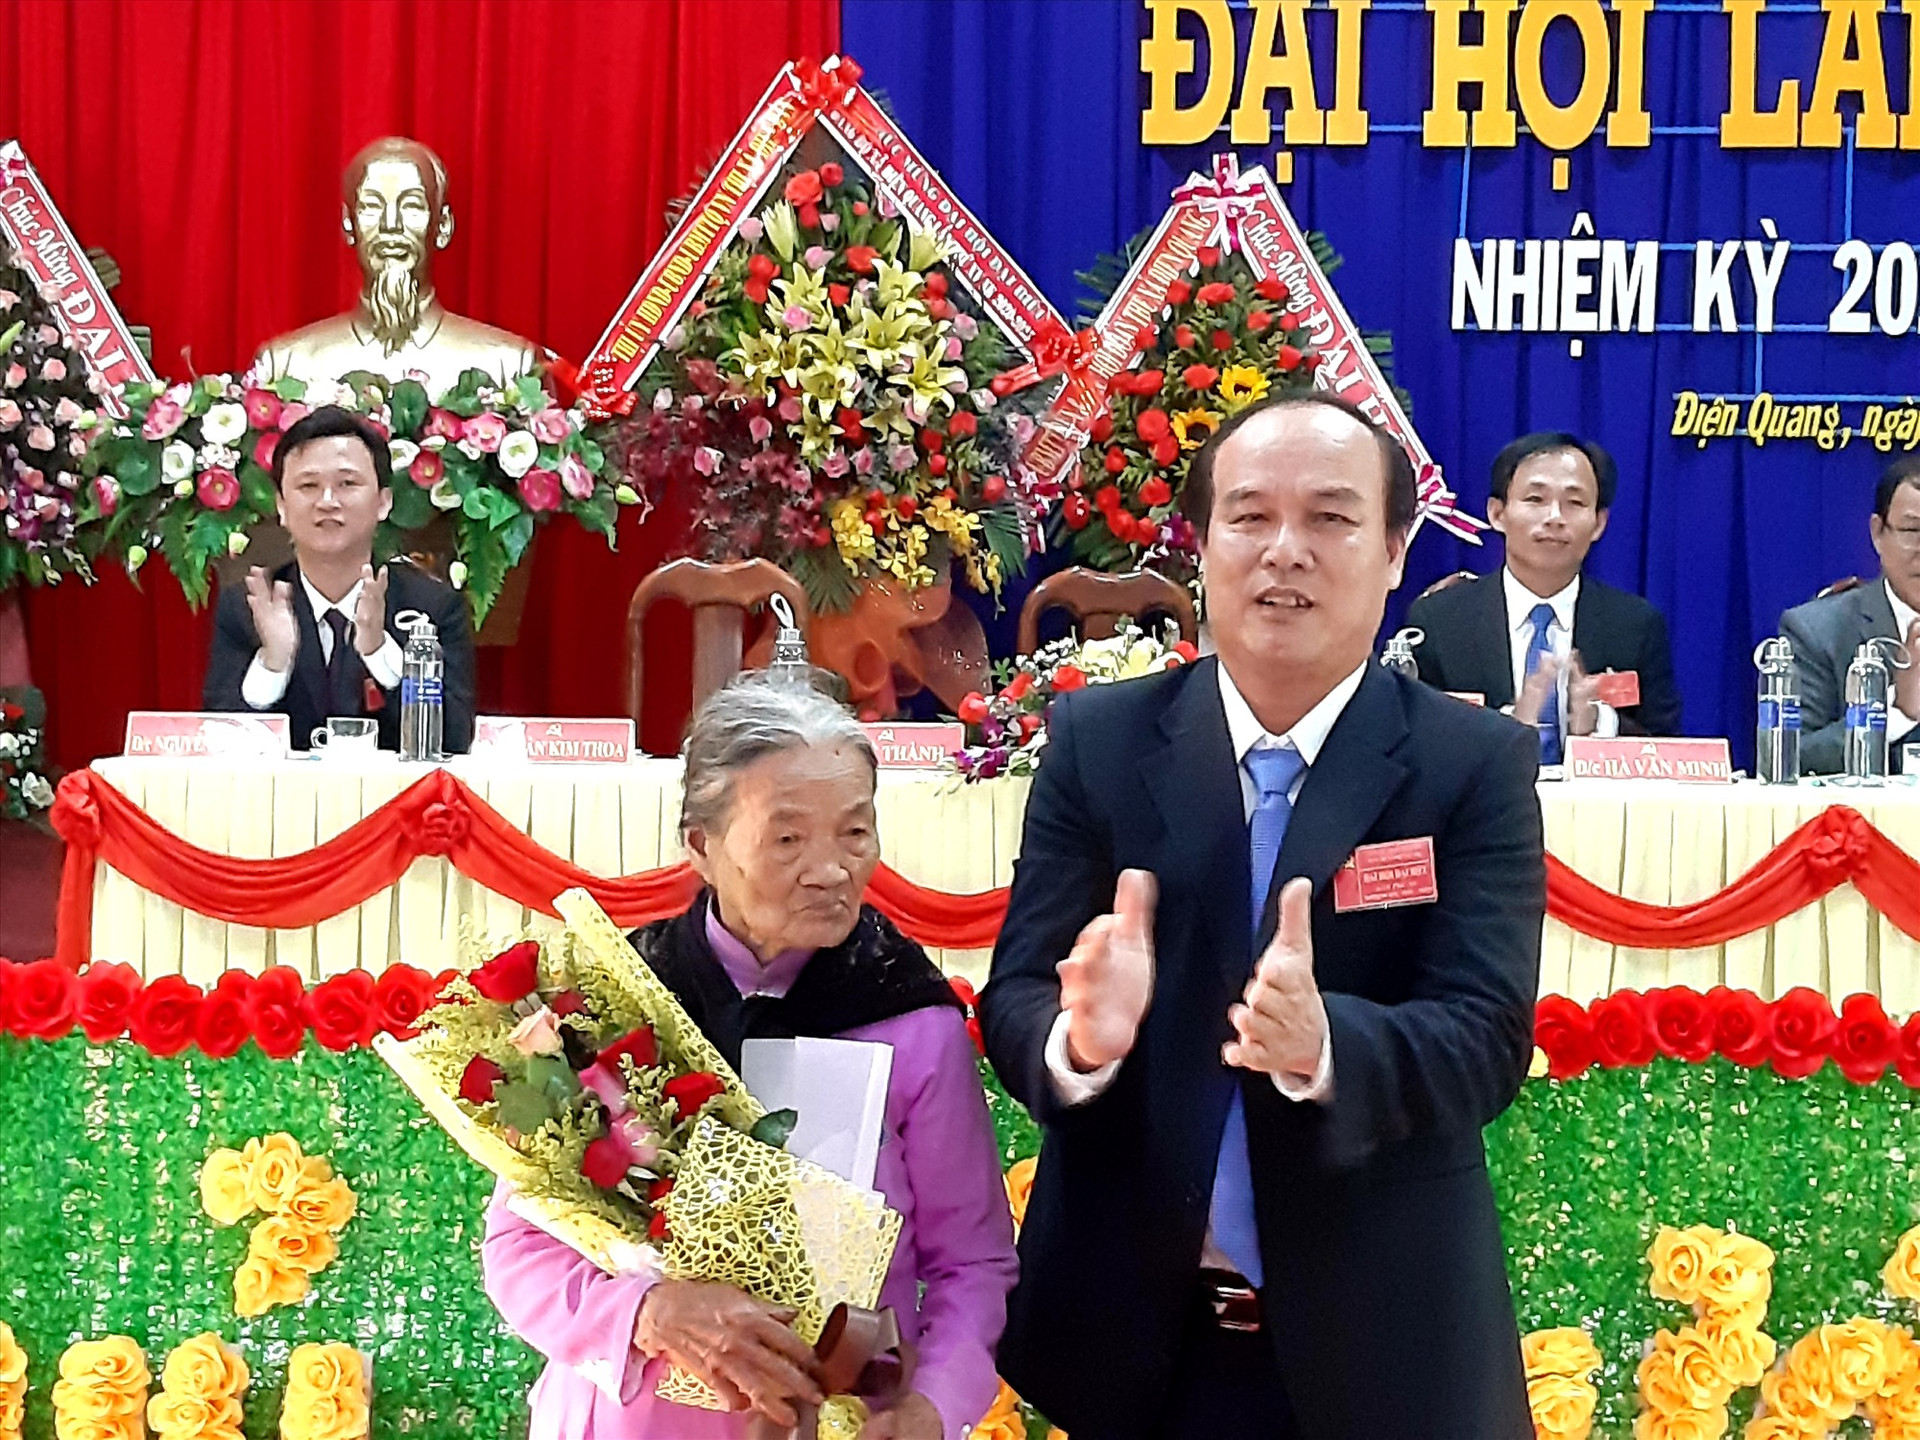 Ông Lê Thành - Bí thư Đảng ủy xã Điện Quang (khóa XIV) tặng quà và hoa cho Bà mẹ Việt Nam anh hùng Phạm Thị Hân tại phiên khai mạc Đại hội. Ảnh: VĂN SỰ